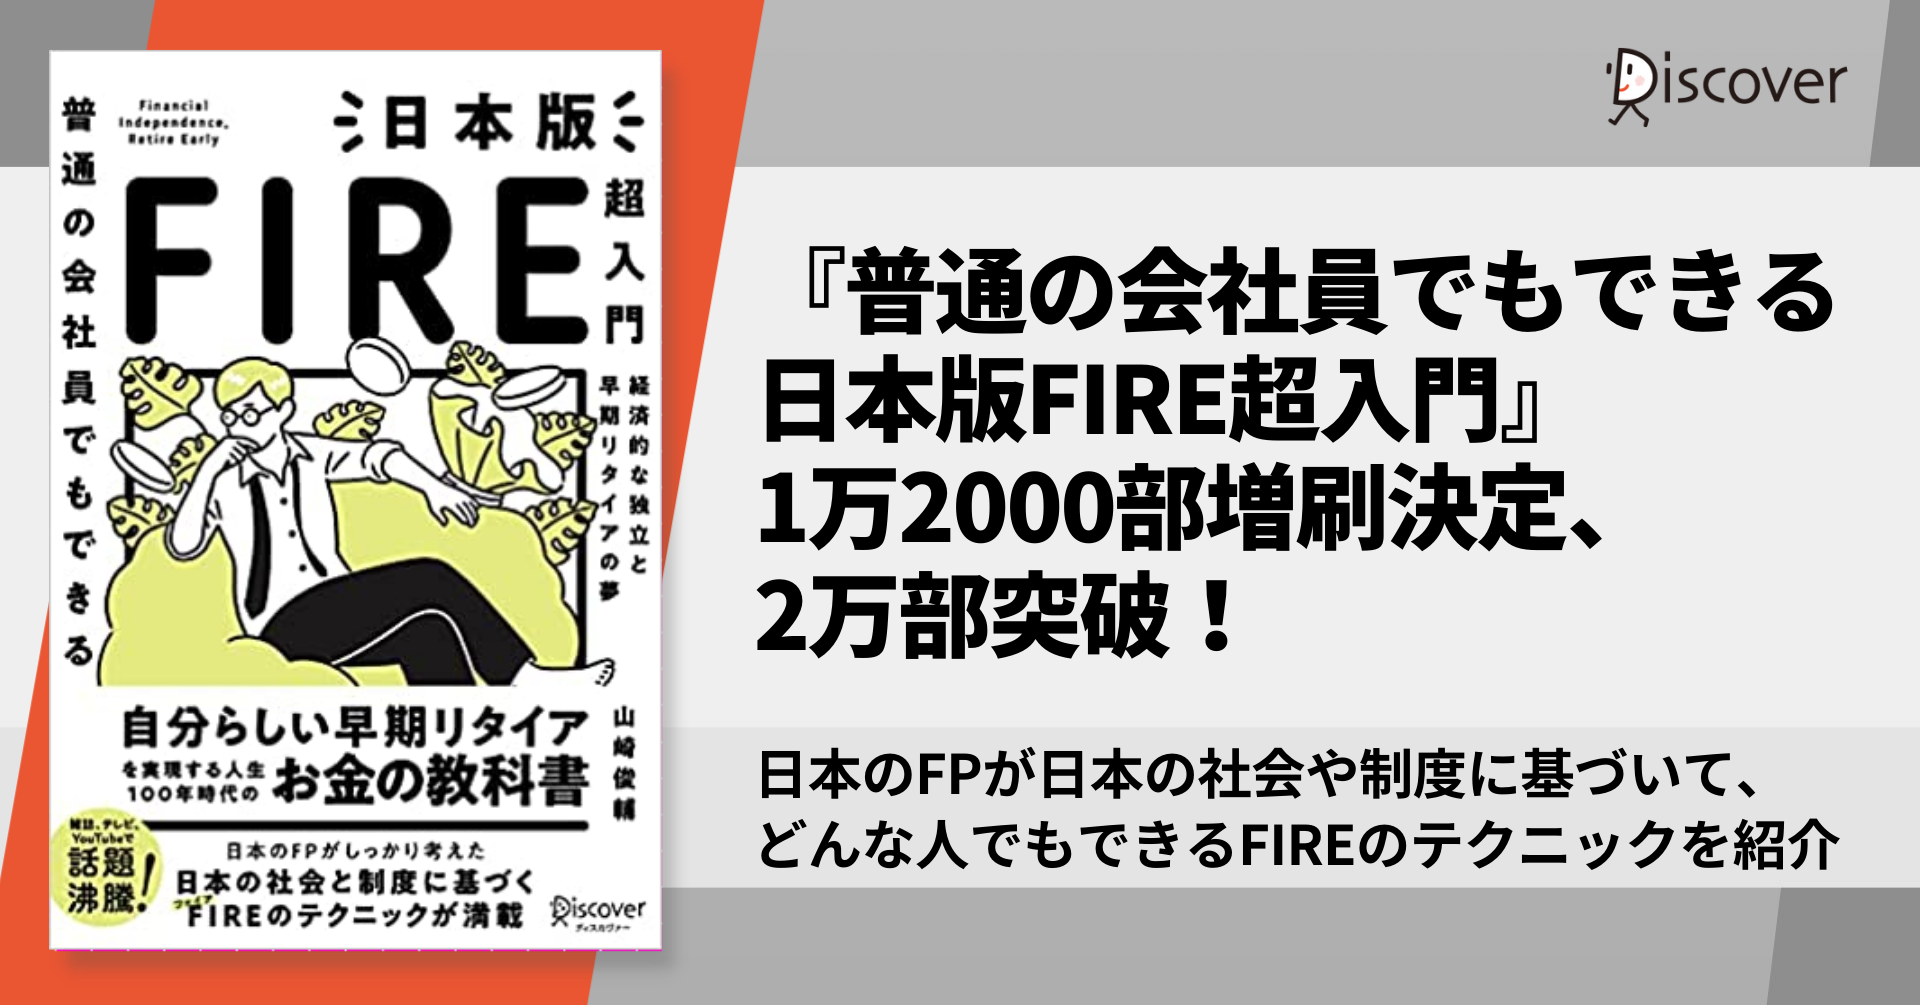 発売後即重版 日本人のためのfireテクニックが満載の 普通の会社員でもできる日本版fire超入門 2万部突破 株式会社ディスカヴァー トゥエンティワンのプレスリリース